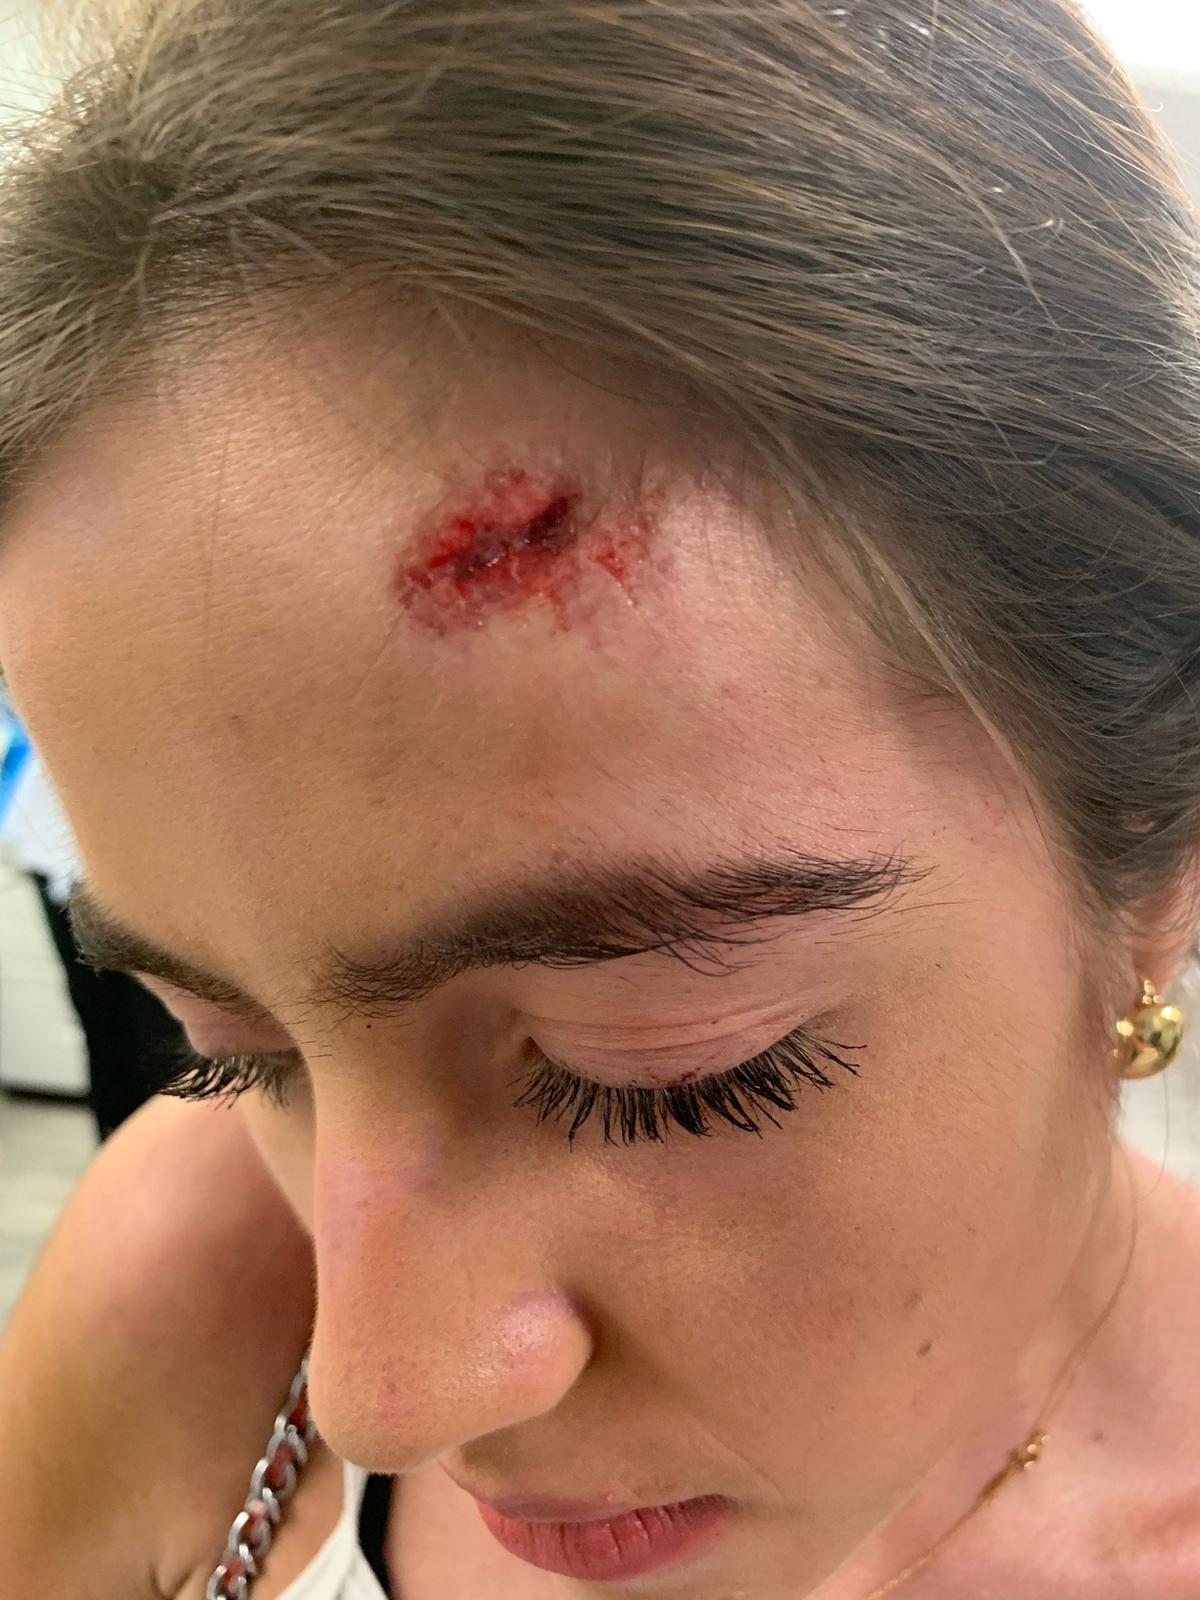 Vanessa von Schwarz after hitting her head. (SWNS)